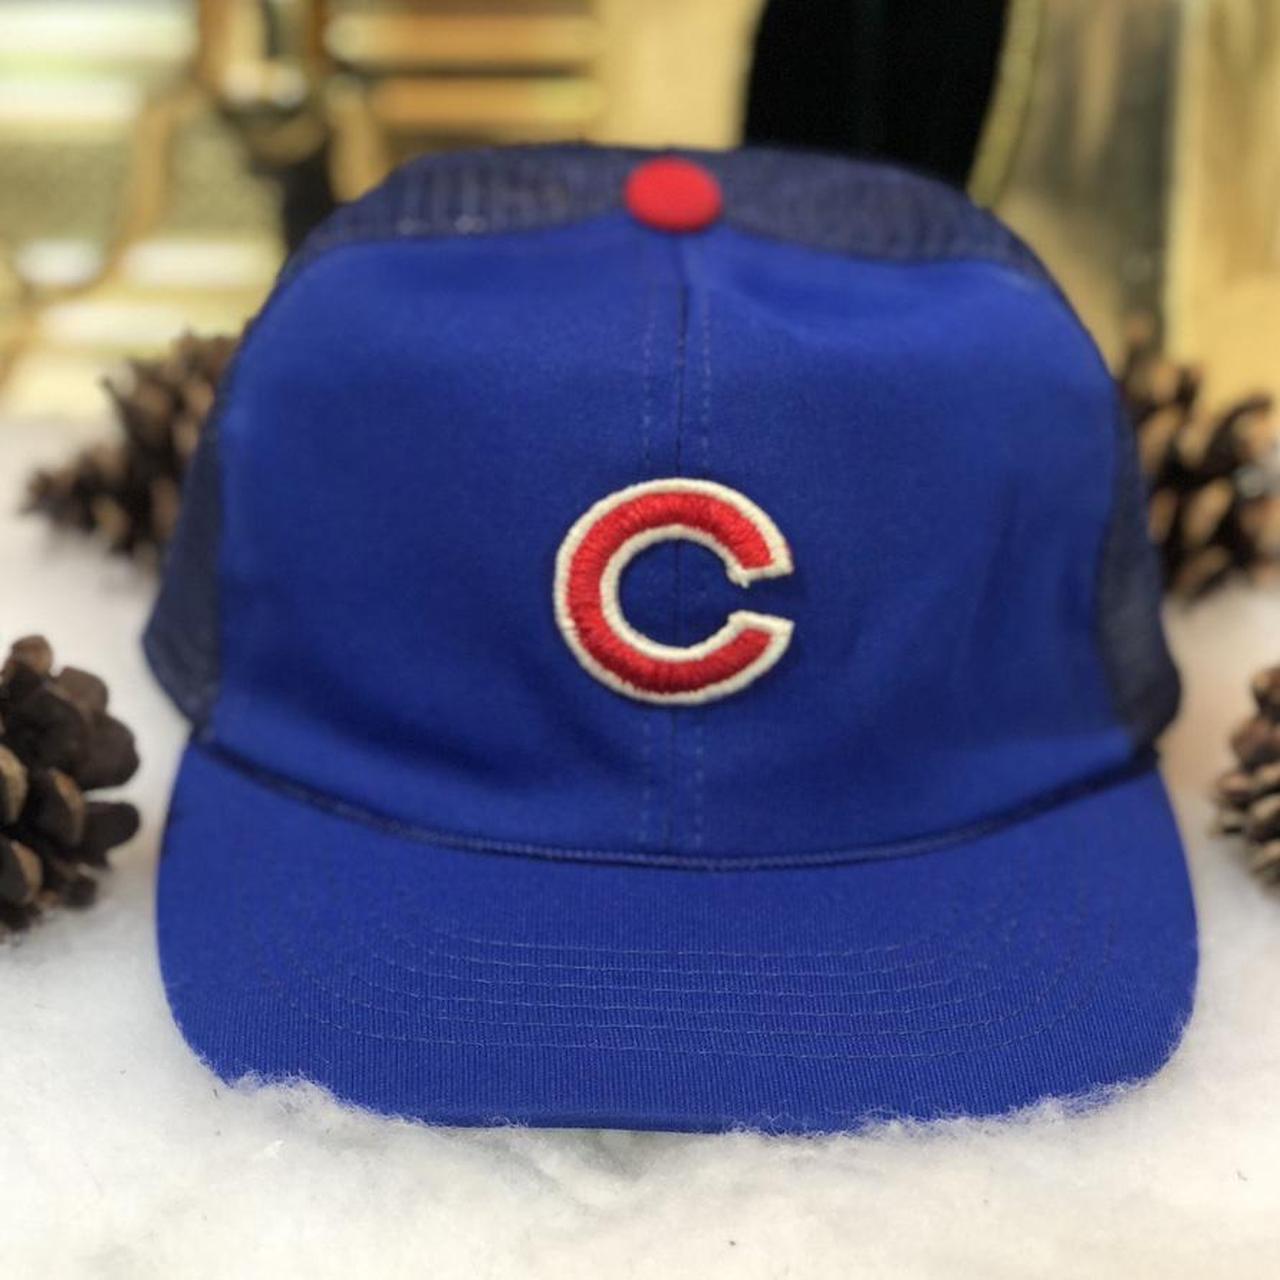 Vintage MLB Chicago Cubs Twins Enterprise Trucker Hat